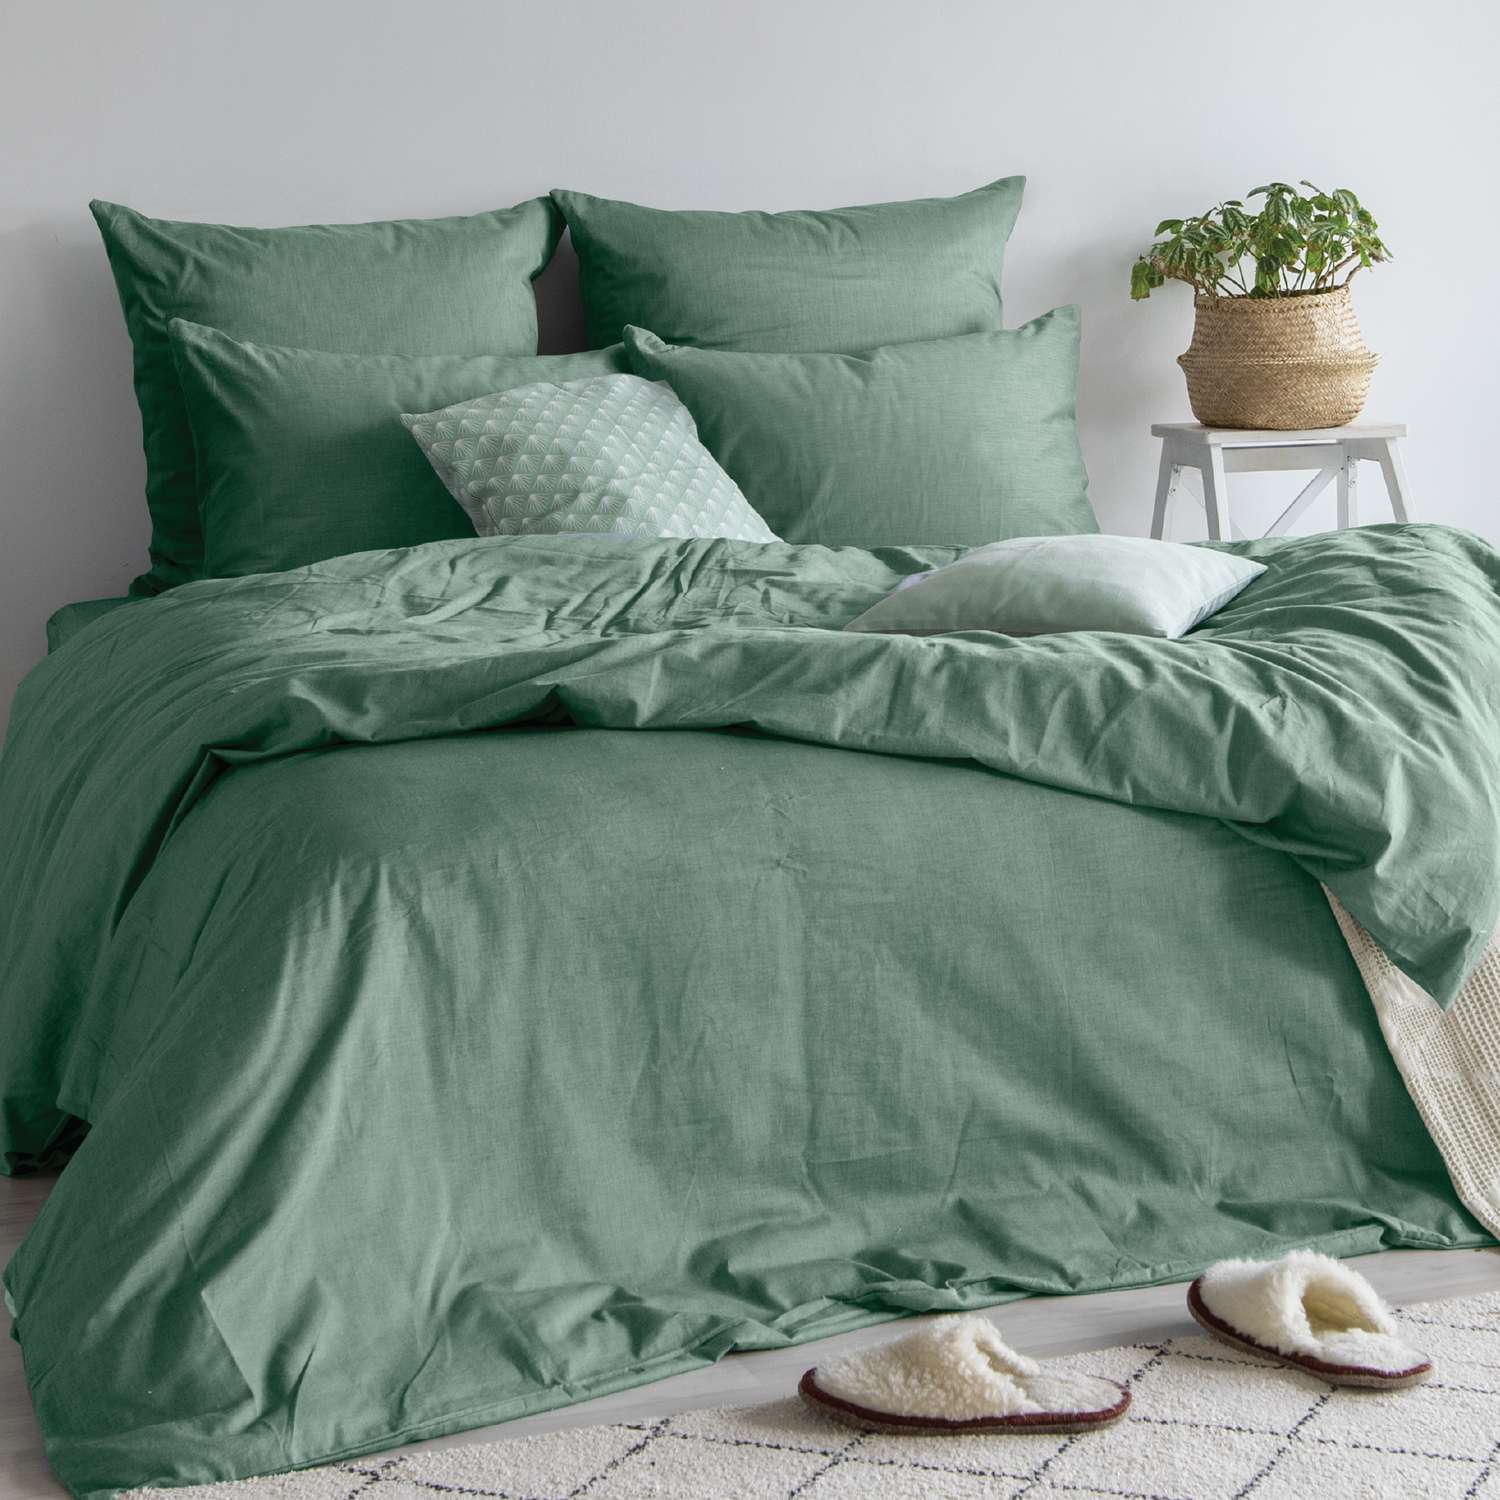 Комплект постельного белья Absolut Евро Emerald наволочки 70х70 и 50х70см меланж - фото 2